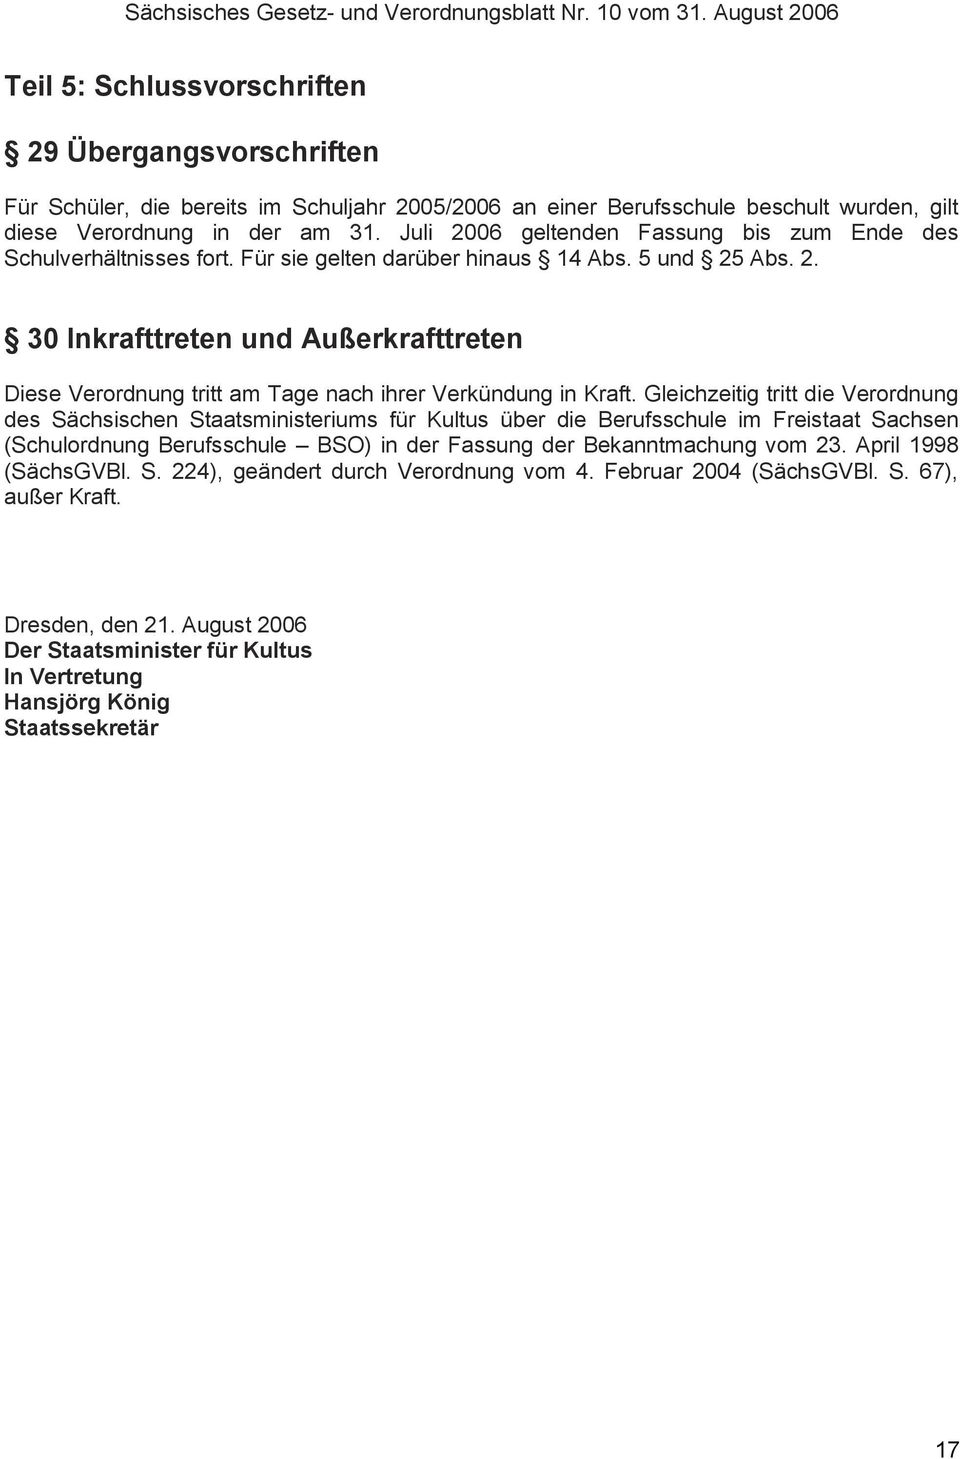 Gleichzeitig tritt die Verordnung des Sächsischen Staatsministeriums für Kultus über die Berufsschule im Freistaat Sachsen (Schulordnung Berufsschule BSO) in der Fassung der Bekanntmachung vom 23.